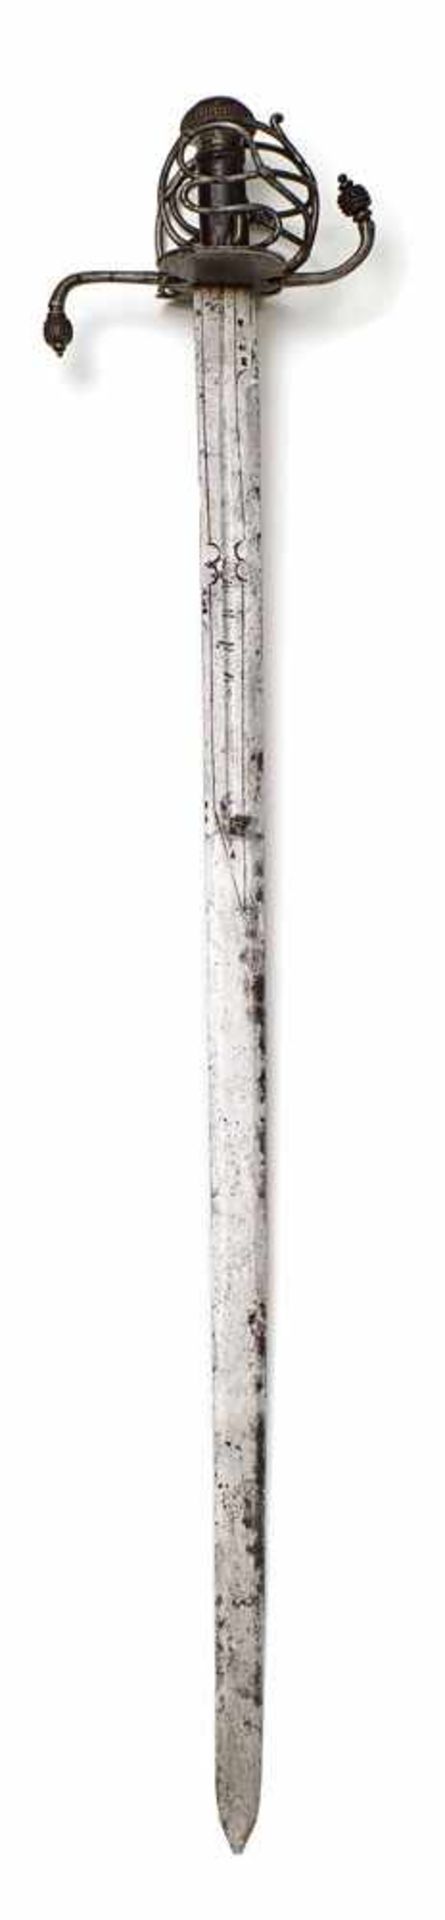 Südtiroler KorbschwertUm 1560/70Zweischneidige, gekehlte Rückenklinge, eisernes Korbgefäß,